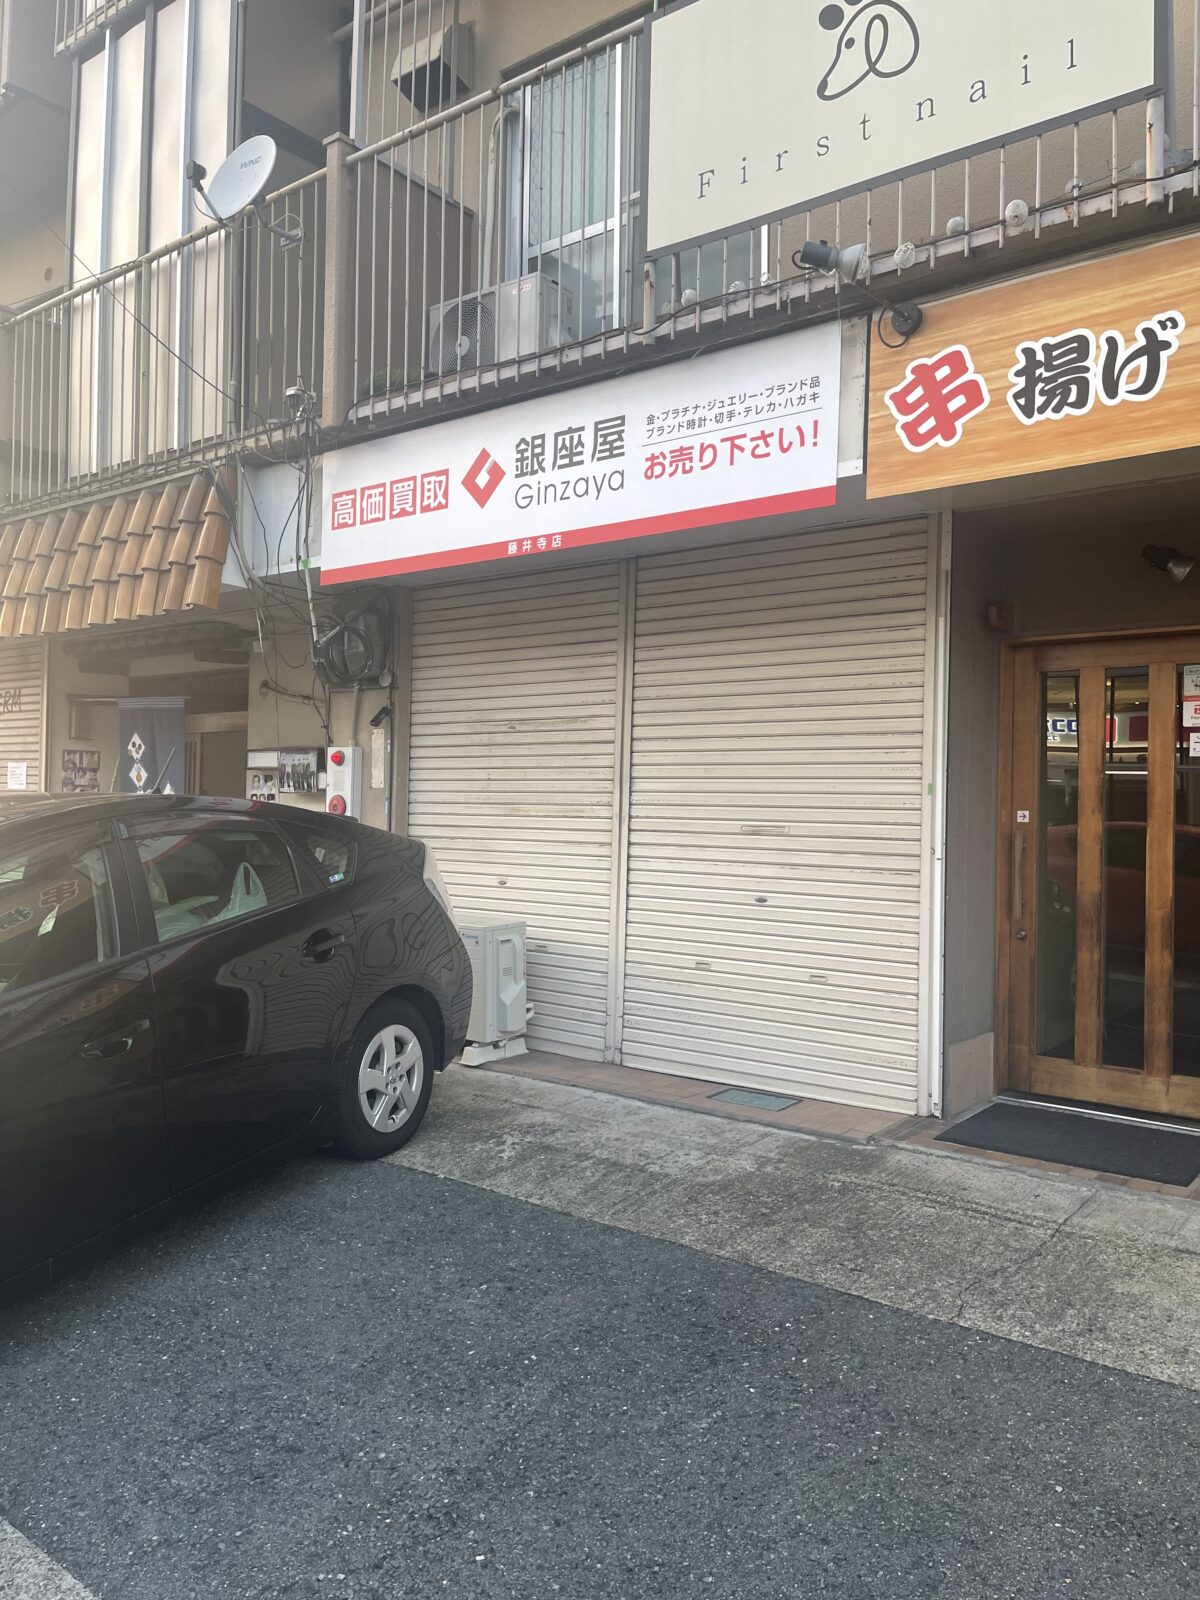 【新店情報】イオン藤井寺店前に「銀座屋藤井寺店」がオープンするそうです♪：